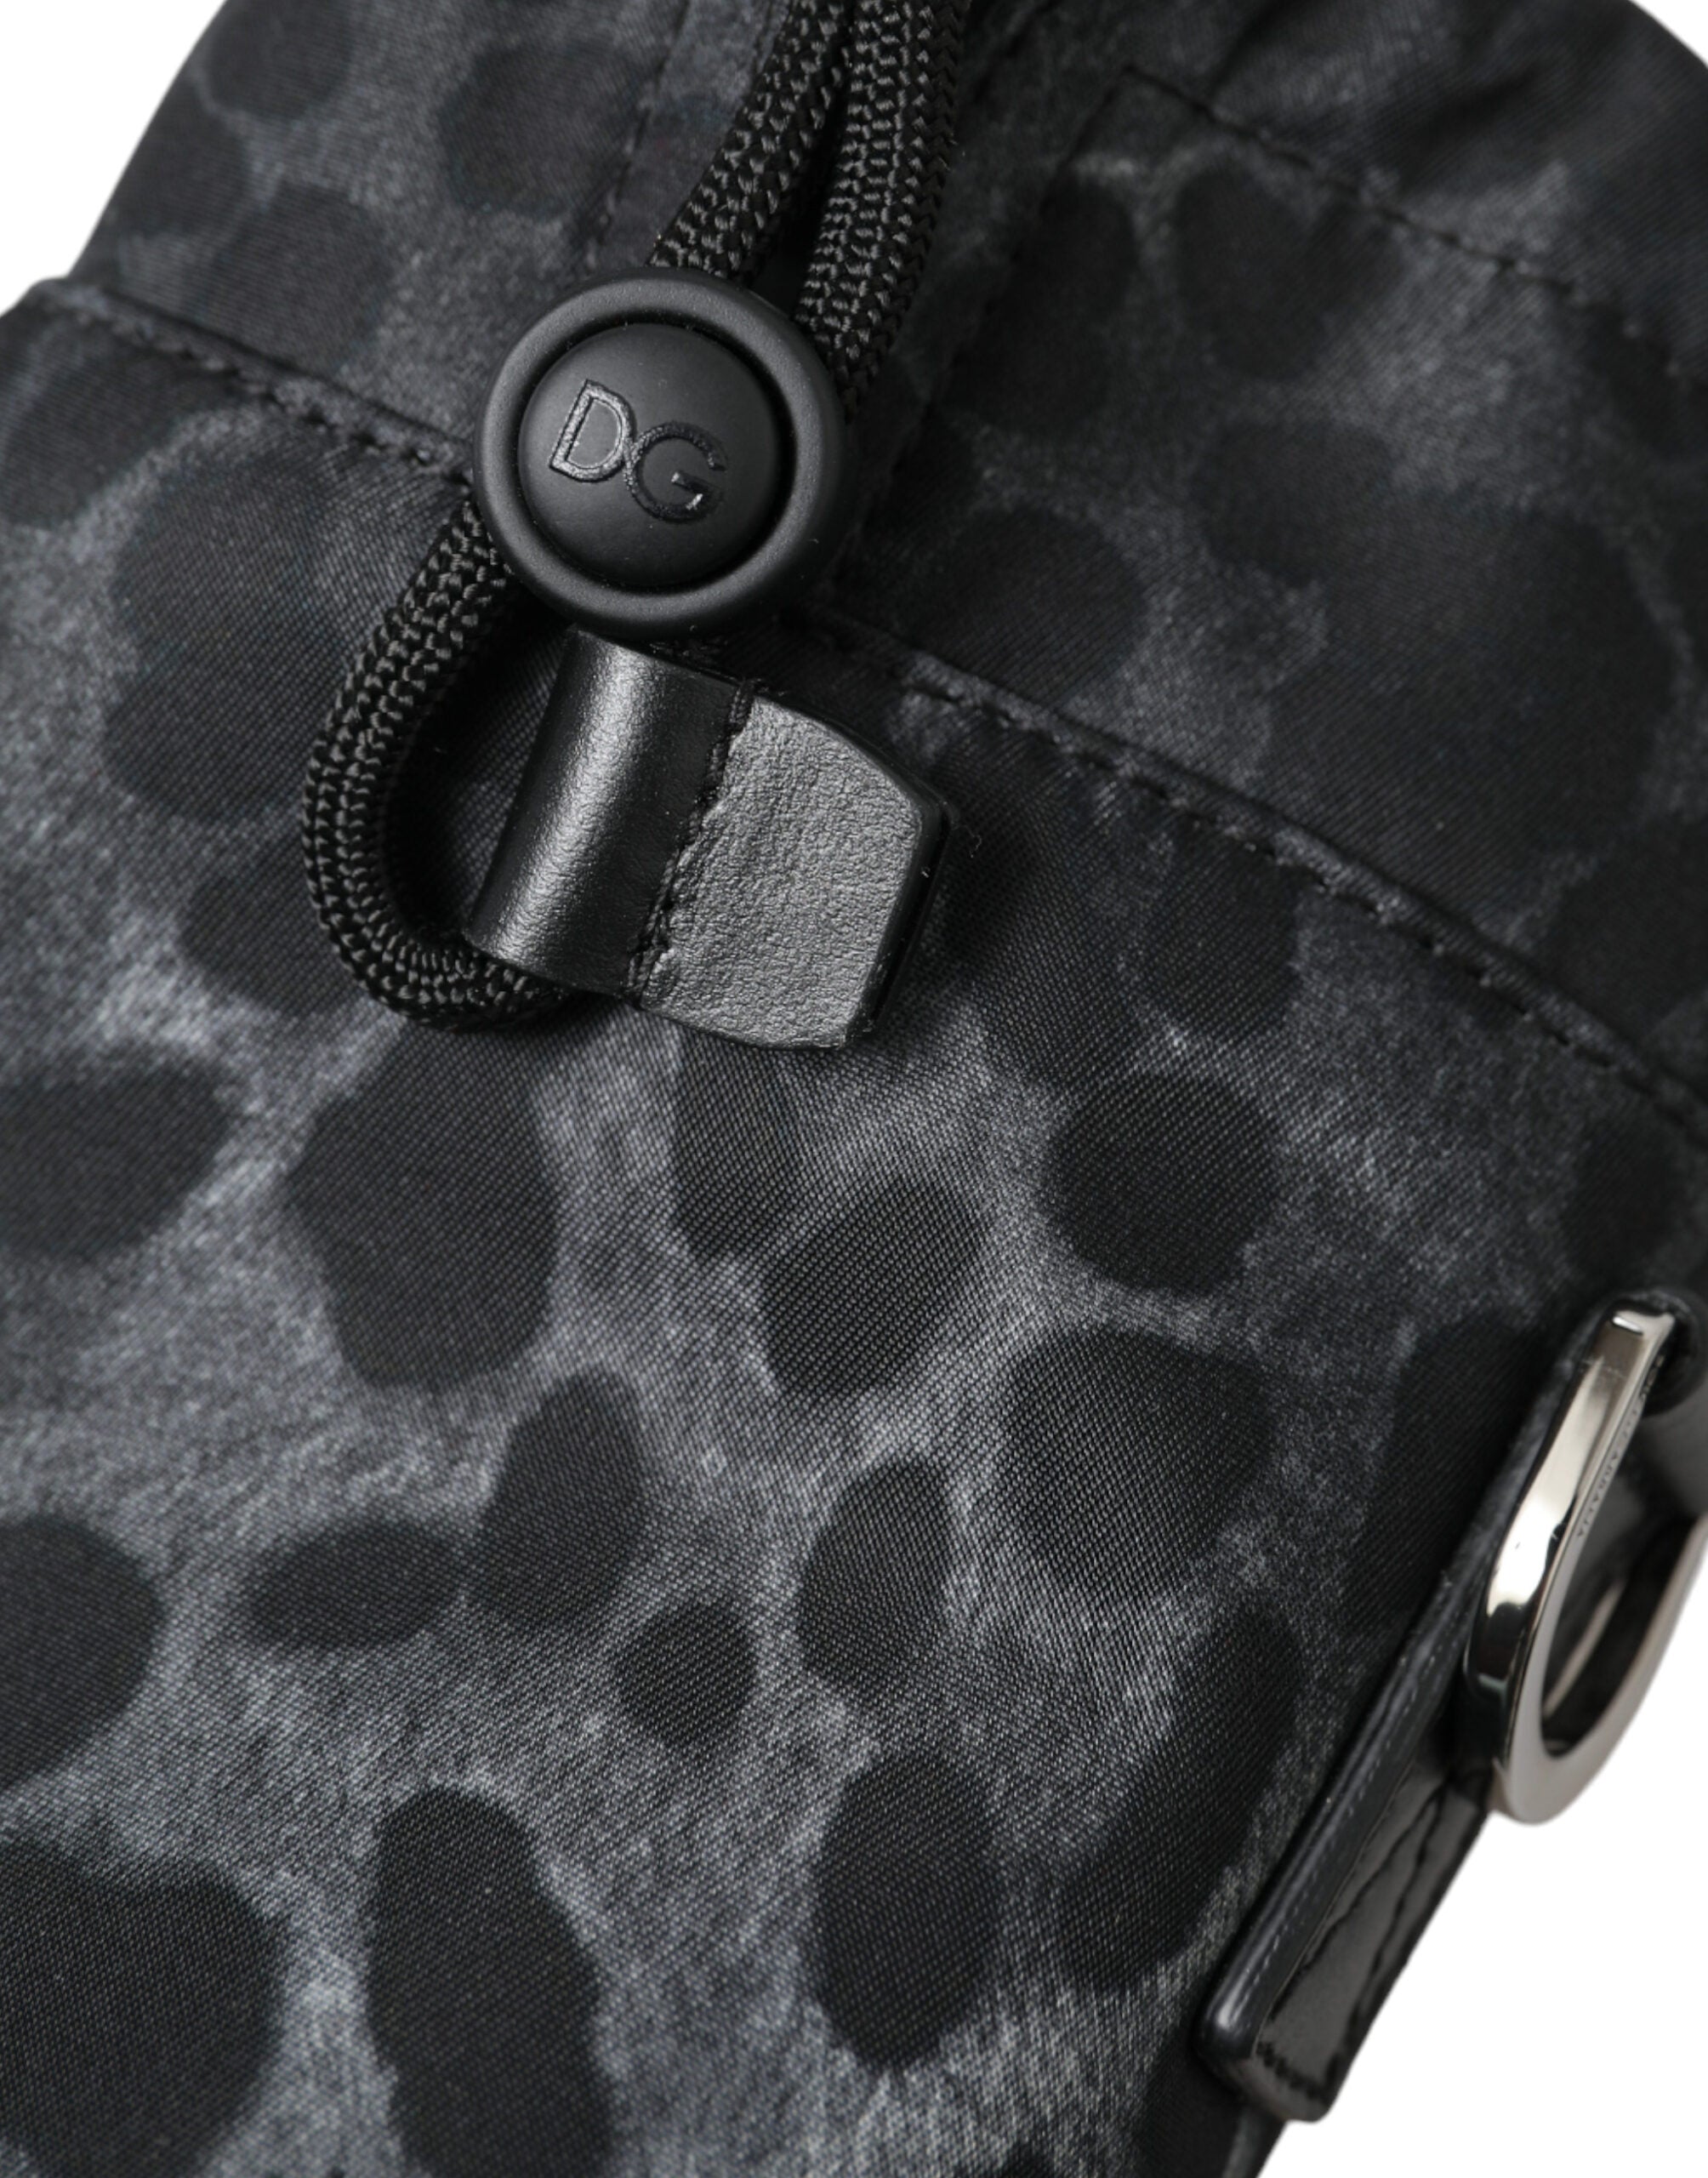 Dolce & Gabbana Schicker runder Flaschenhalter mit Leopardenmuster